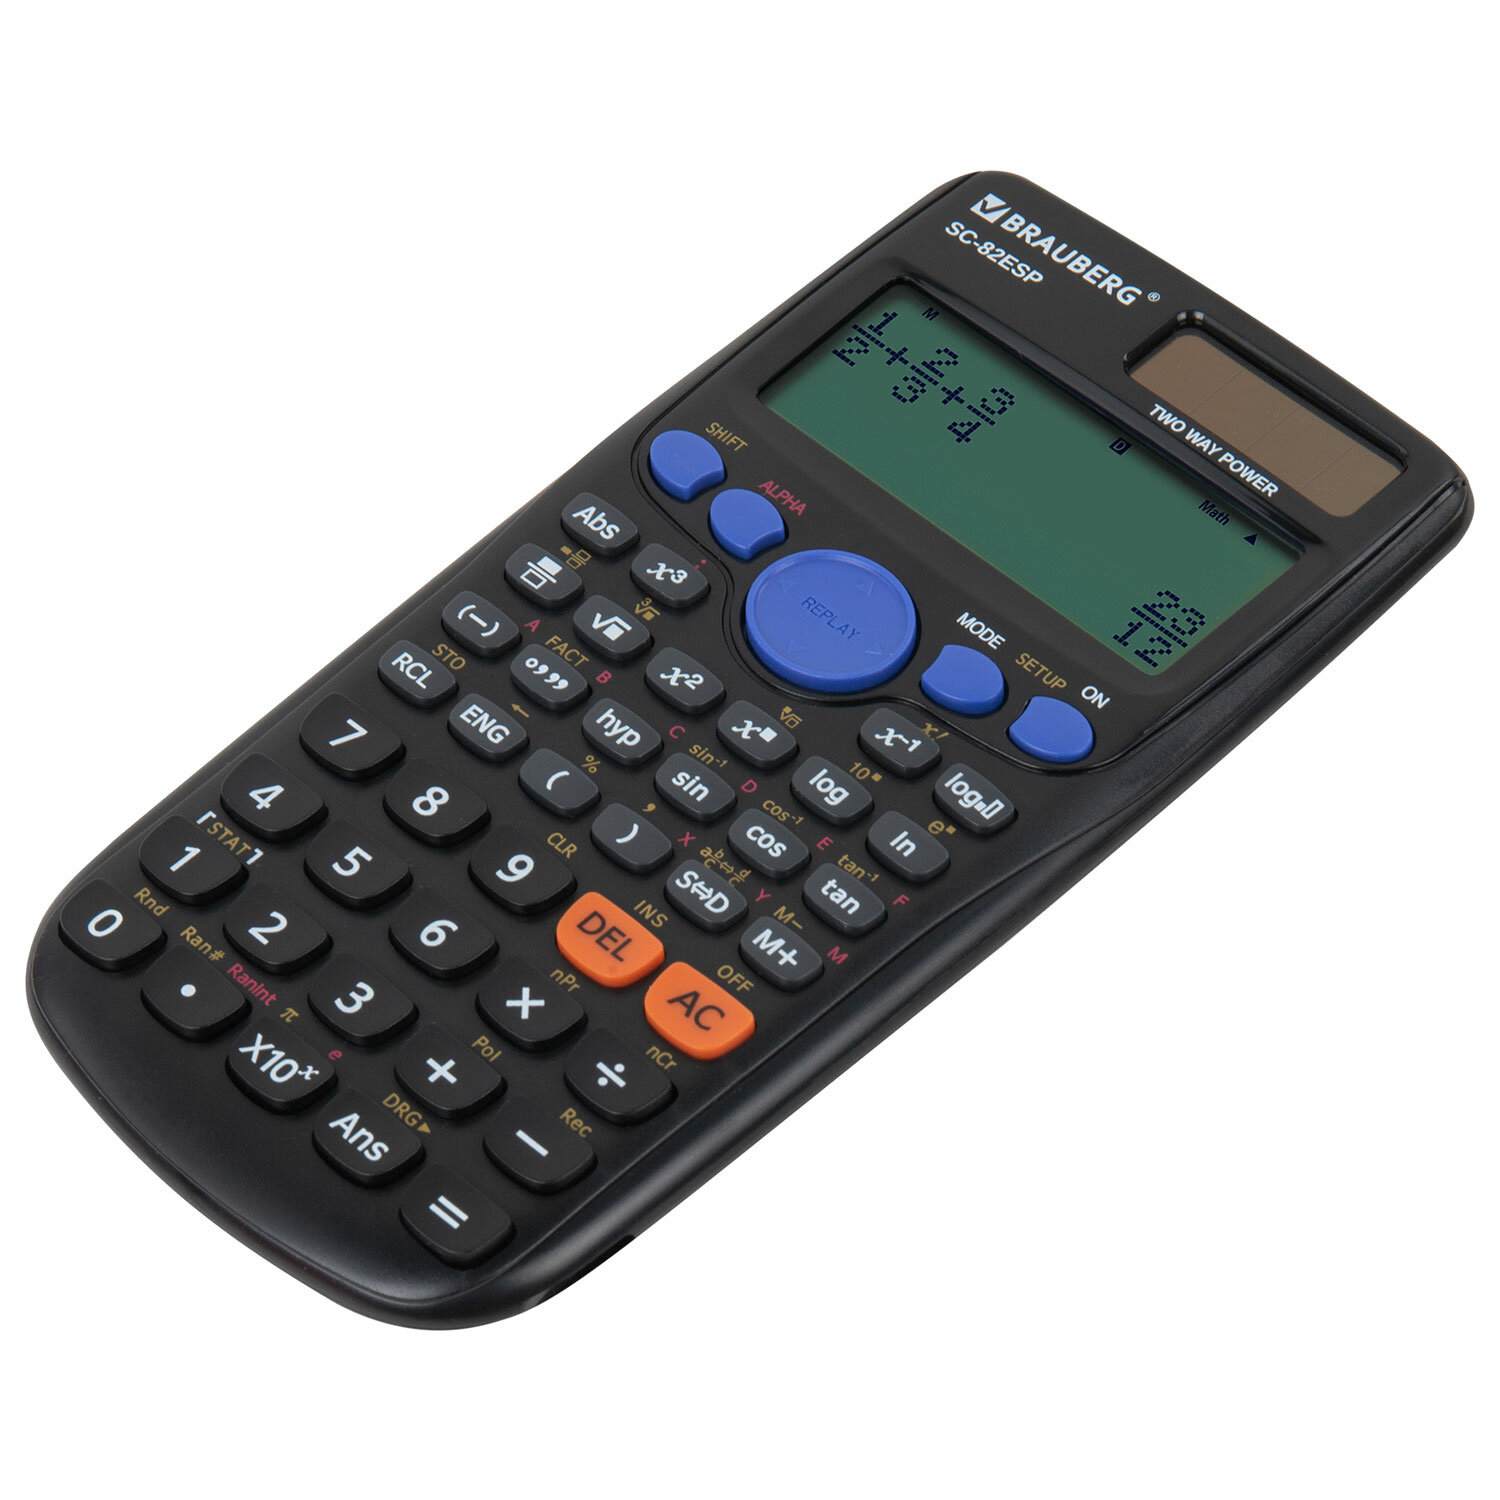 картинка Калькулятор инженерный, 12 разрядов, 16,5*8,4 см, двойное питание, 252 функции, "SC-82ESP", BRAUBERG, 271723 от магазина Альфанит в Кунгуре